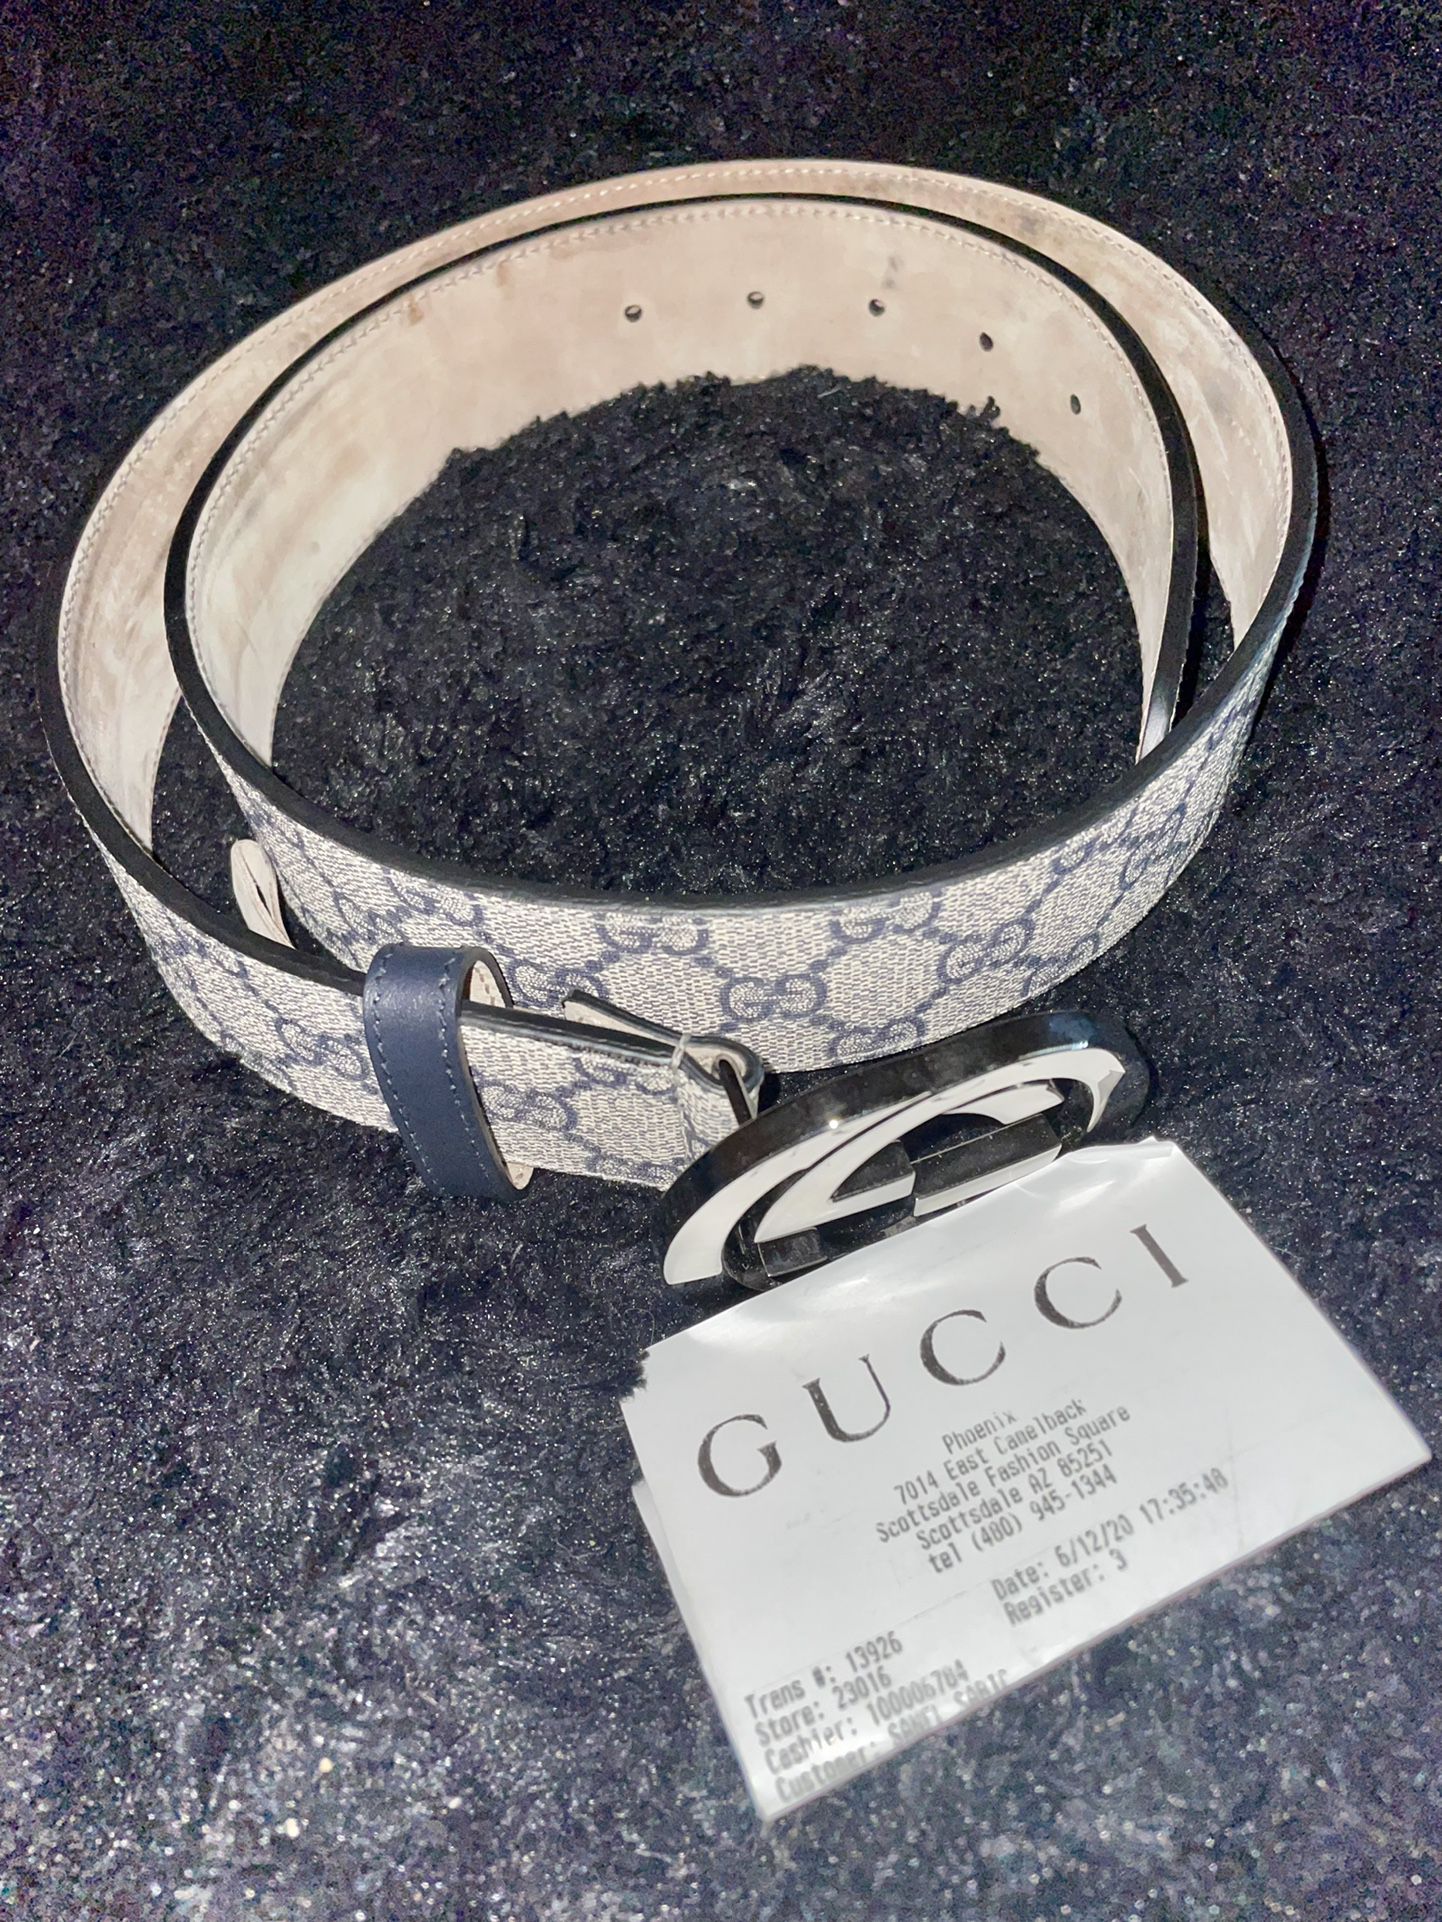 Authentic Louis Vuitton Belt for Sale in Phoenix, AZ - OfferUp